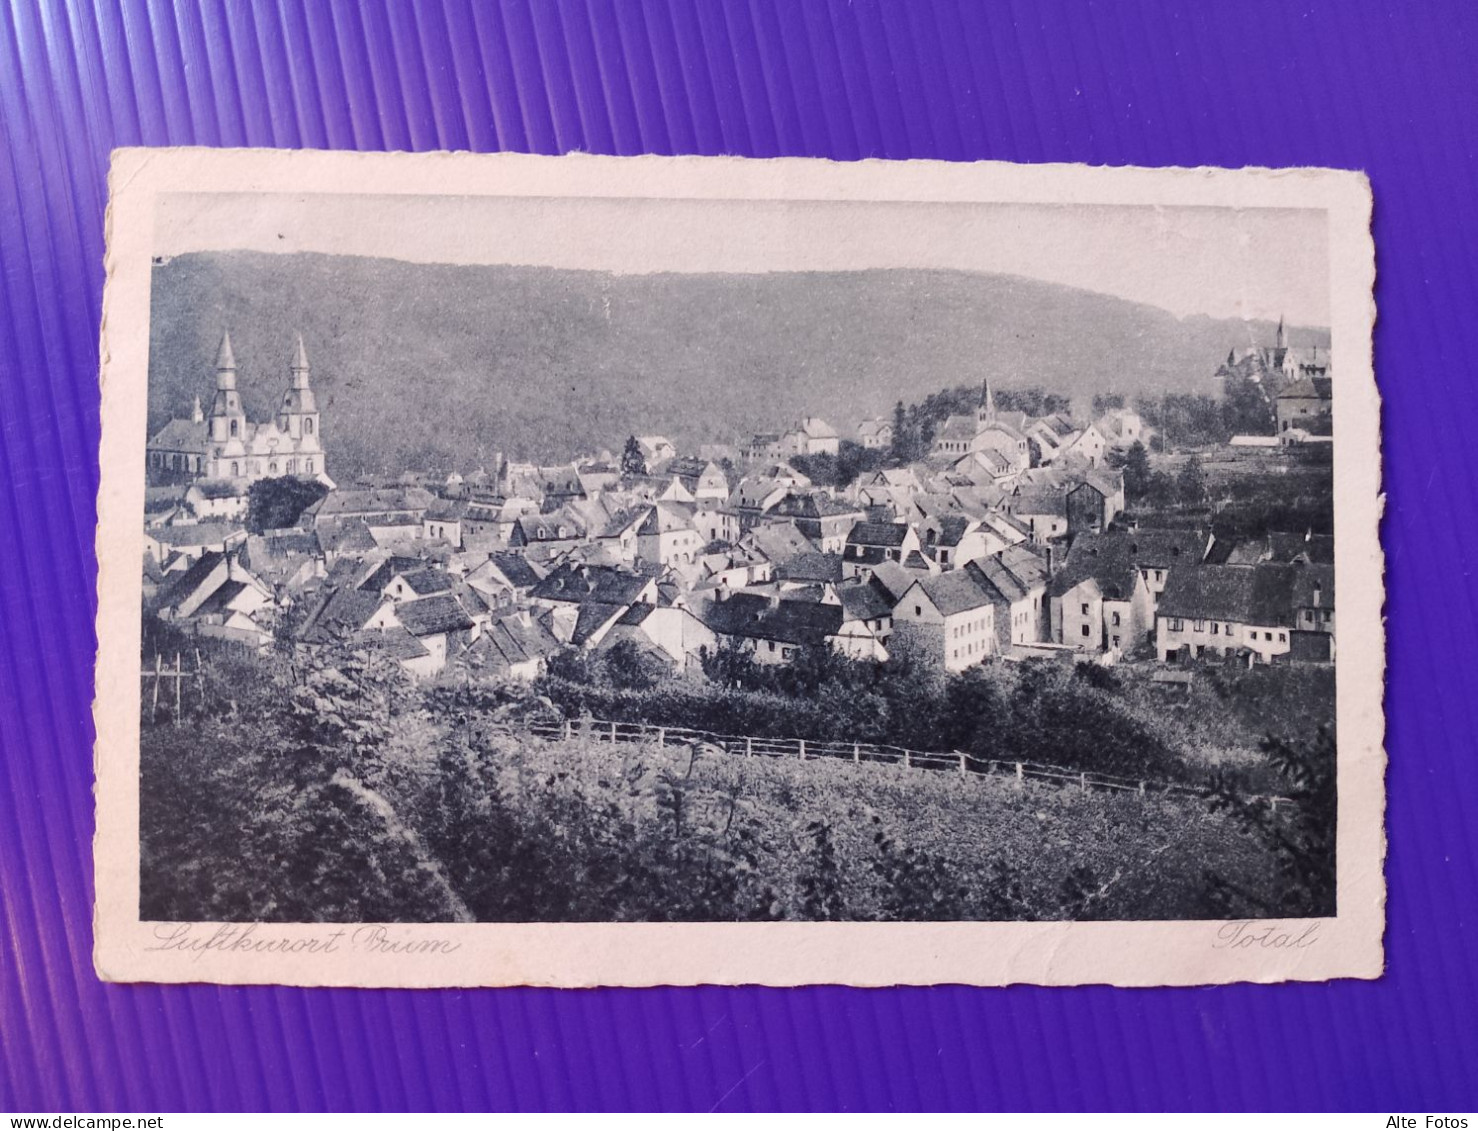 Alte AK Ansichtskarte Postkarte Prüm Bitburg Luftkurort Rheinland Pfalz Deutsches Reich Deutschland Alt Old Postcard Rar - Prüm